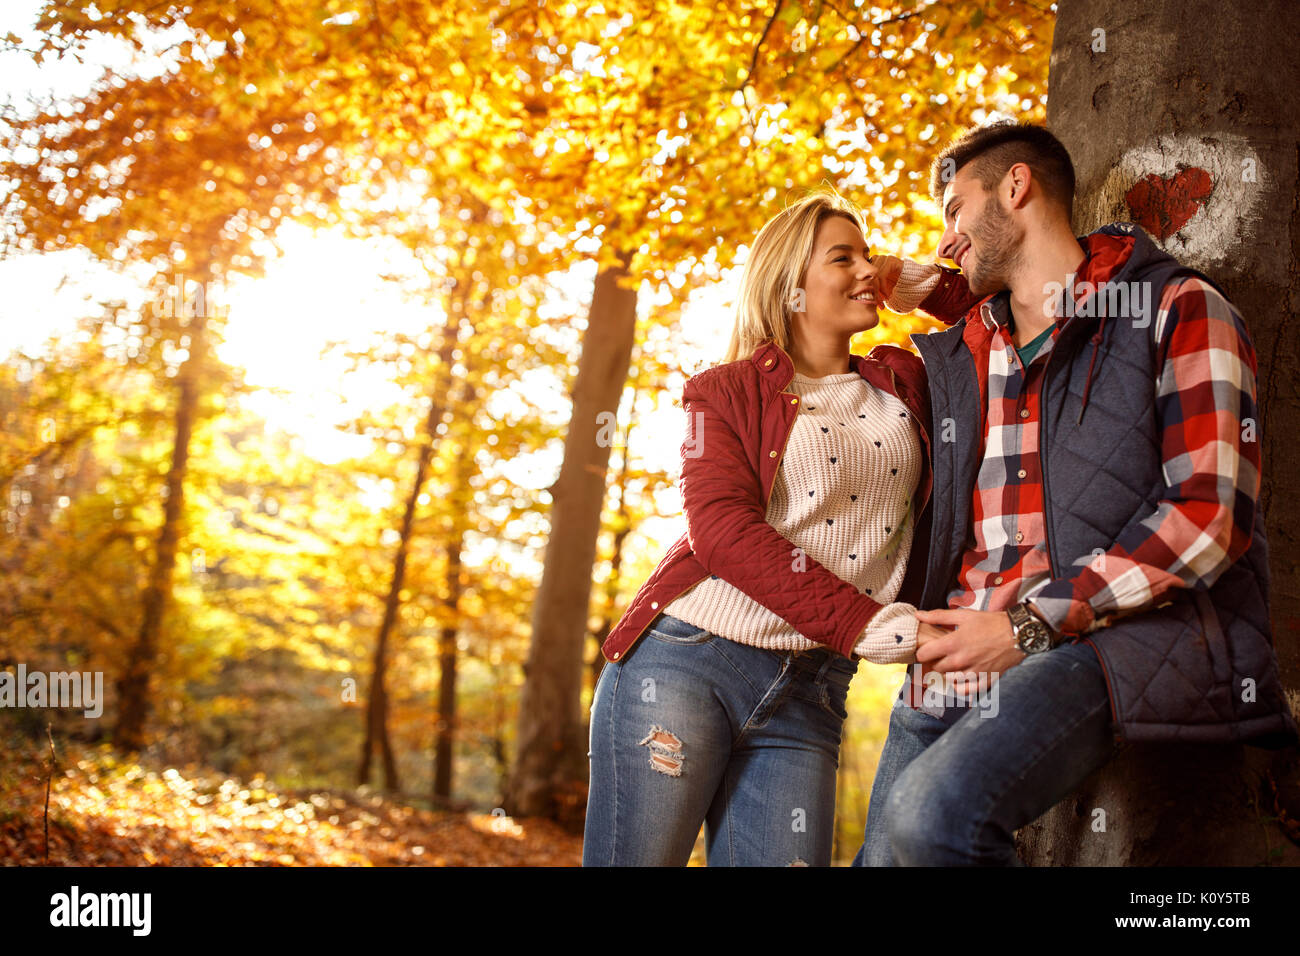 L'amour, relation, famille et personnes concept - smiling couple in autumn park Banque D'Images